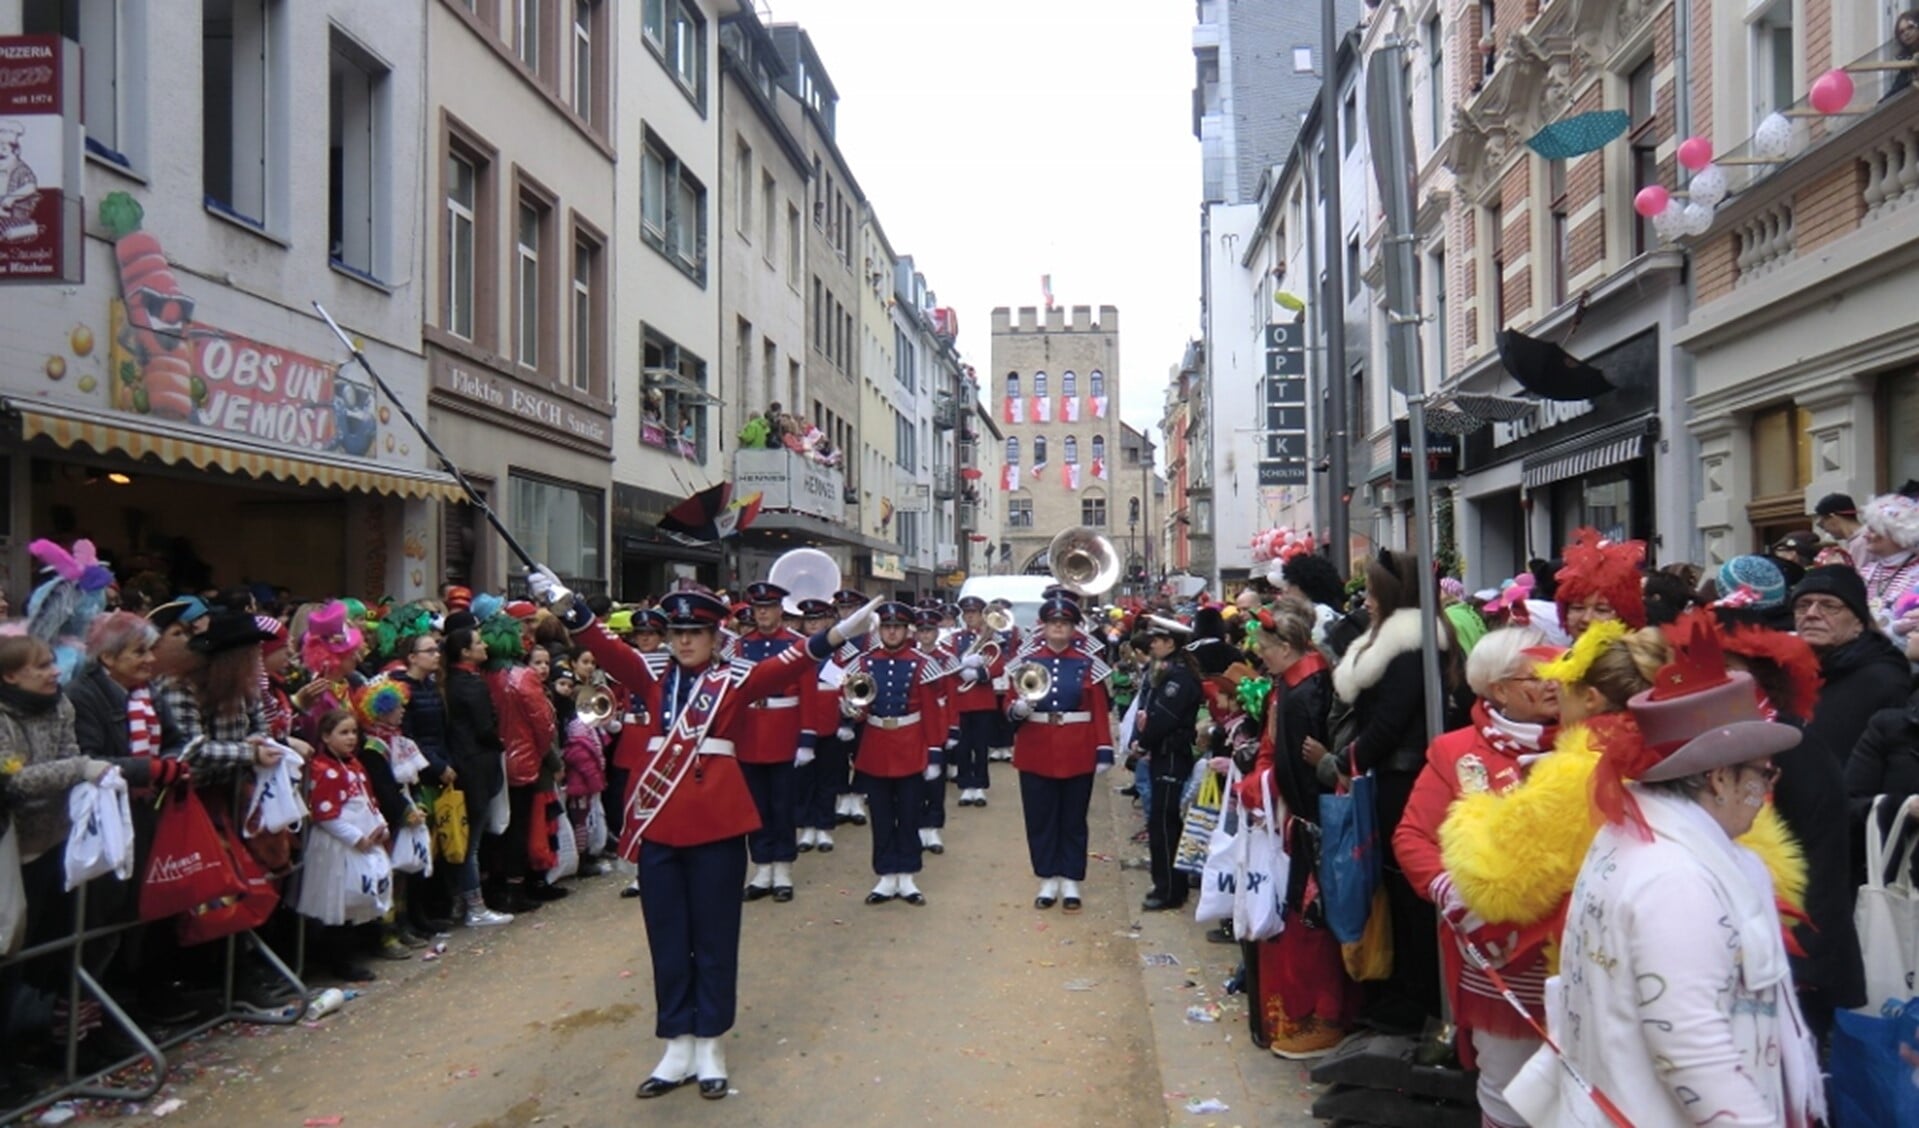 Spelen op het carnaval in Keulen in de grote optocht was de kers op de taart.